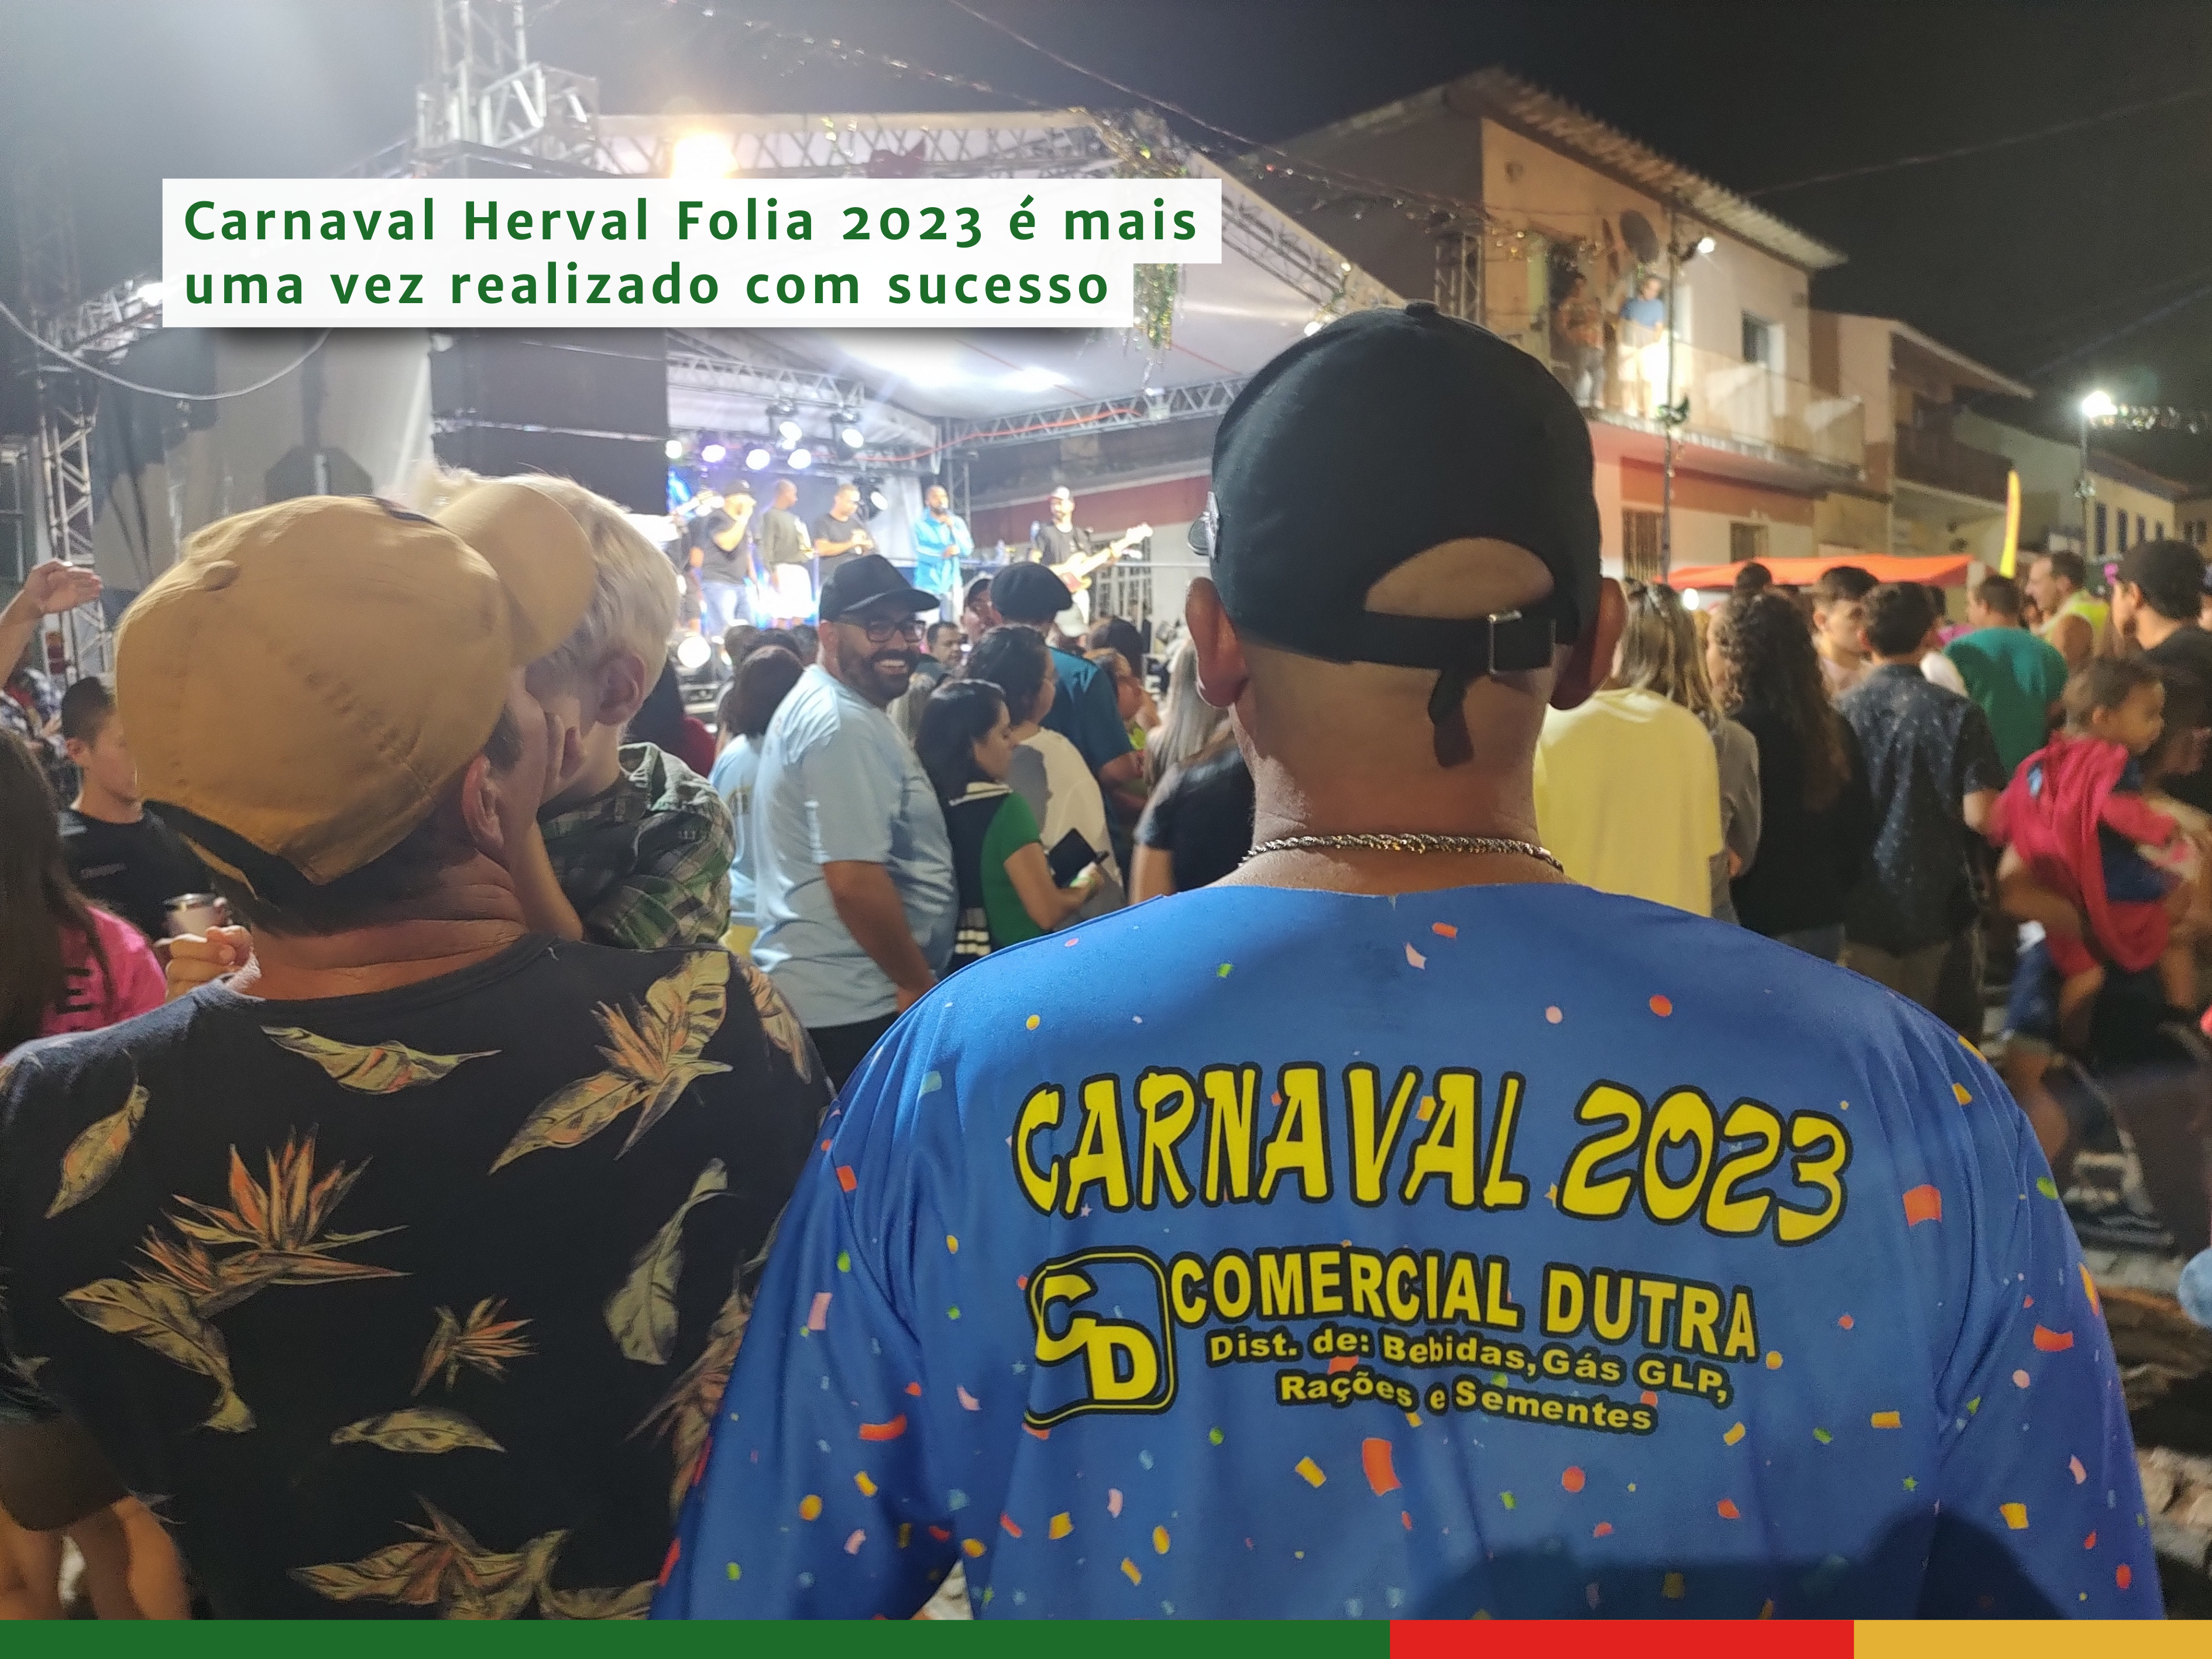 Carnaval Herval Folia 2023 é mais uma vez realizado com sucesso